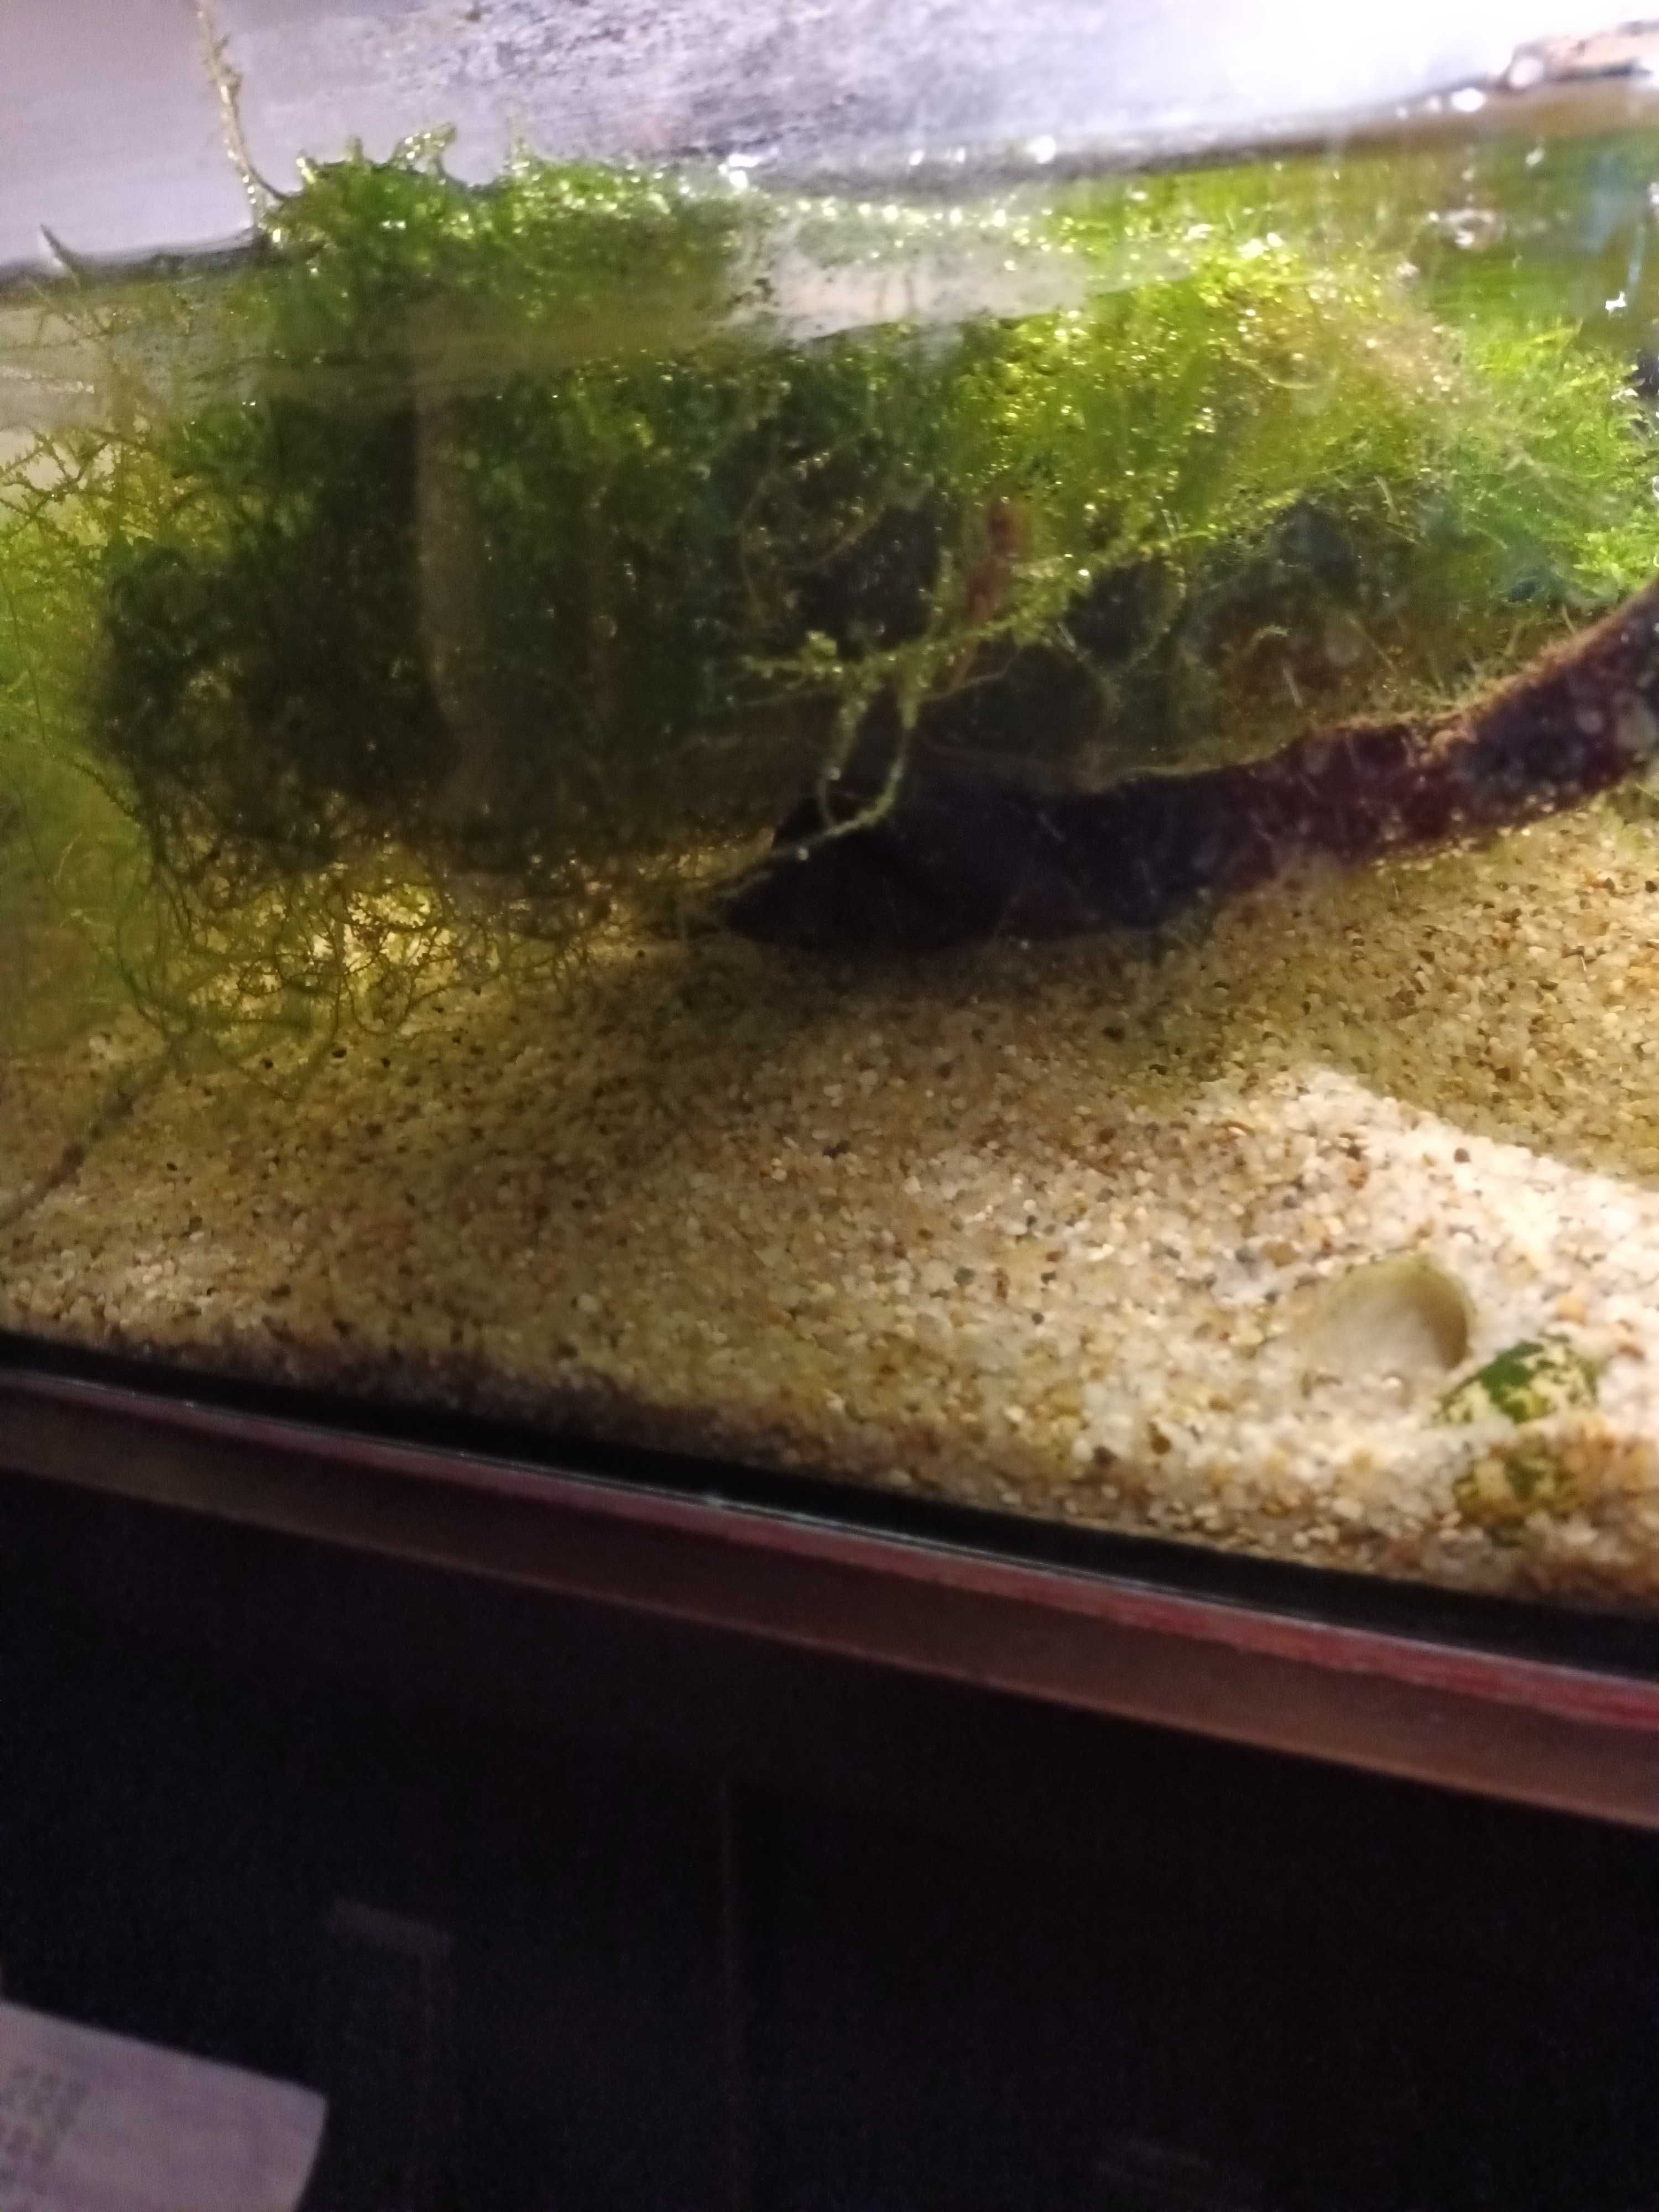 Duzy zestaw- akwarium plus dodatki do terrarium